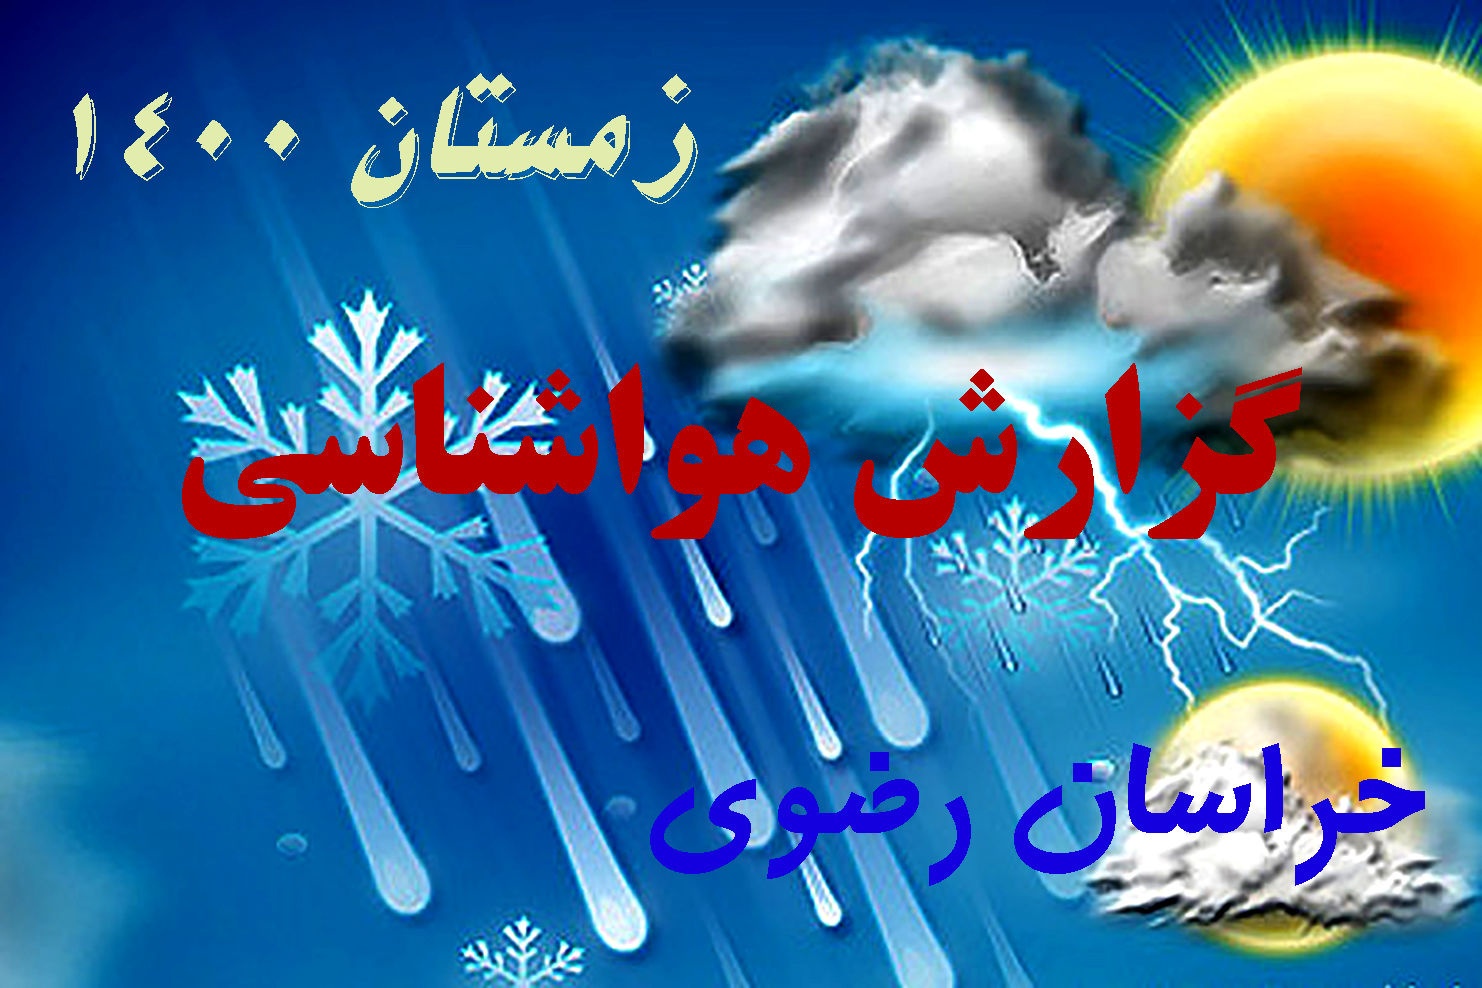 سردترین شهر خراسان رضوی در ۲۴ ساعت گذشته قوچان بوده است